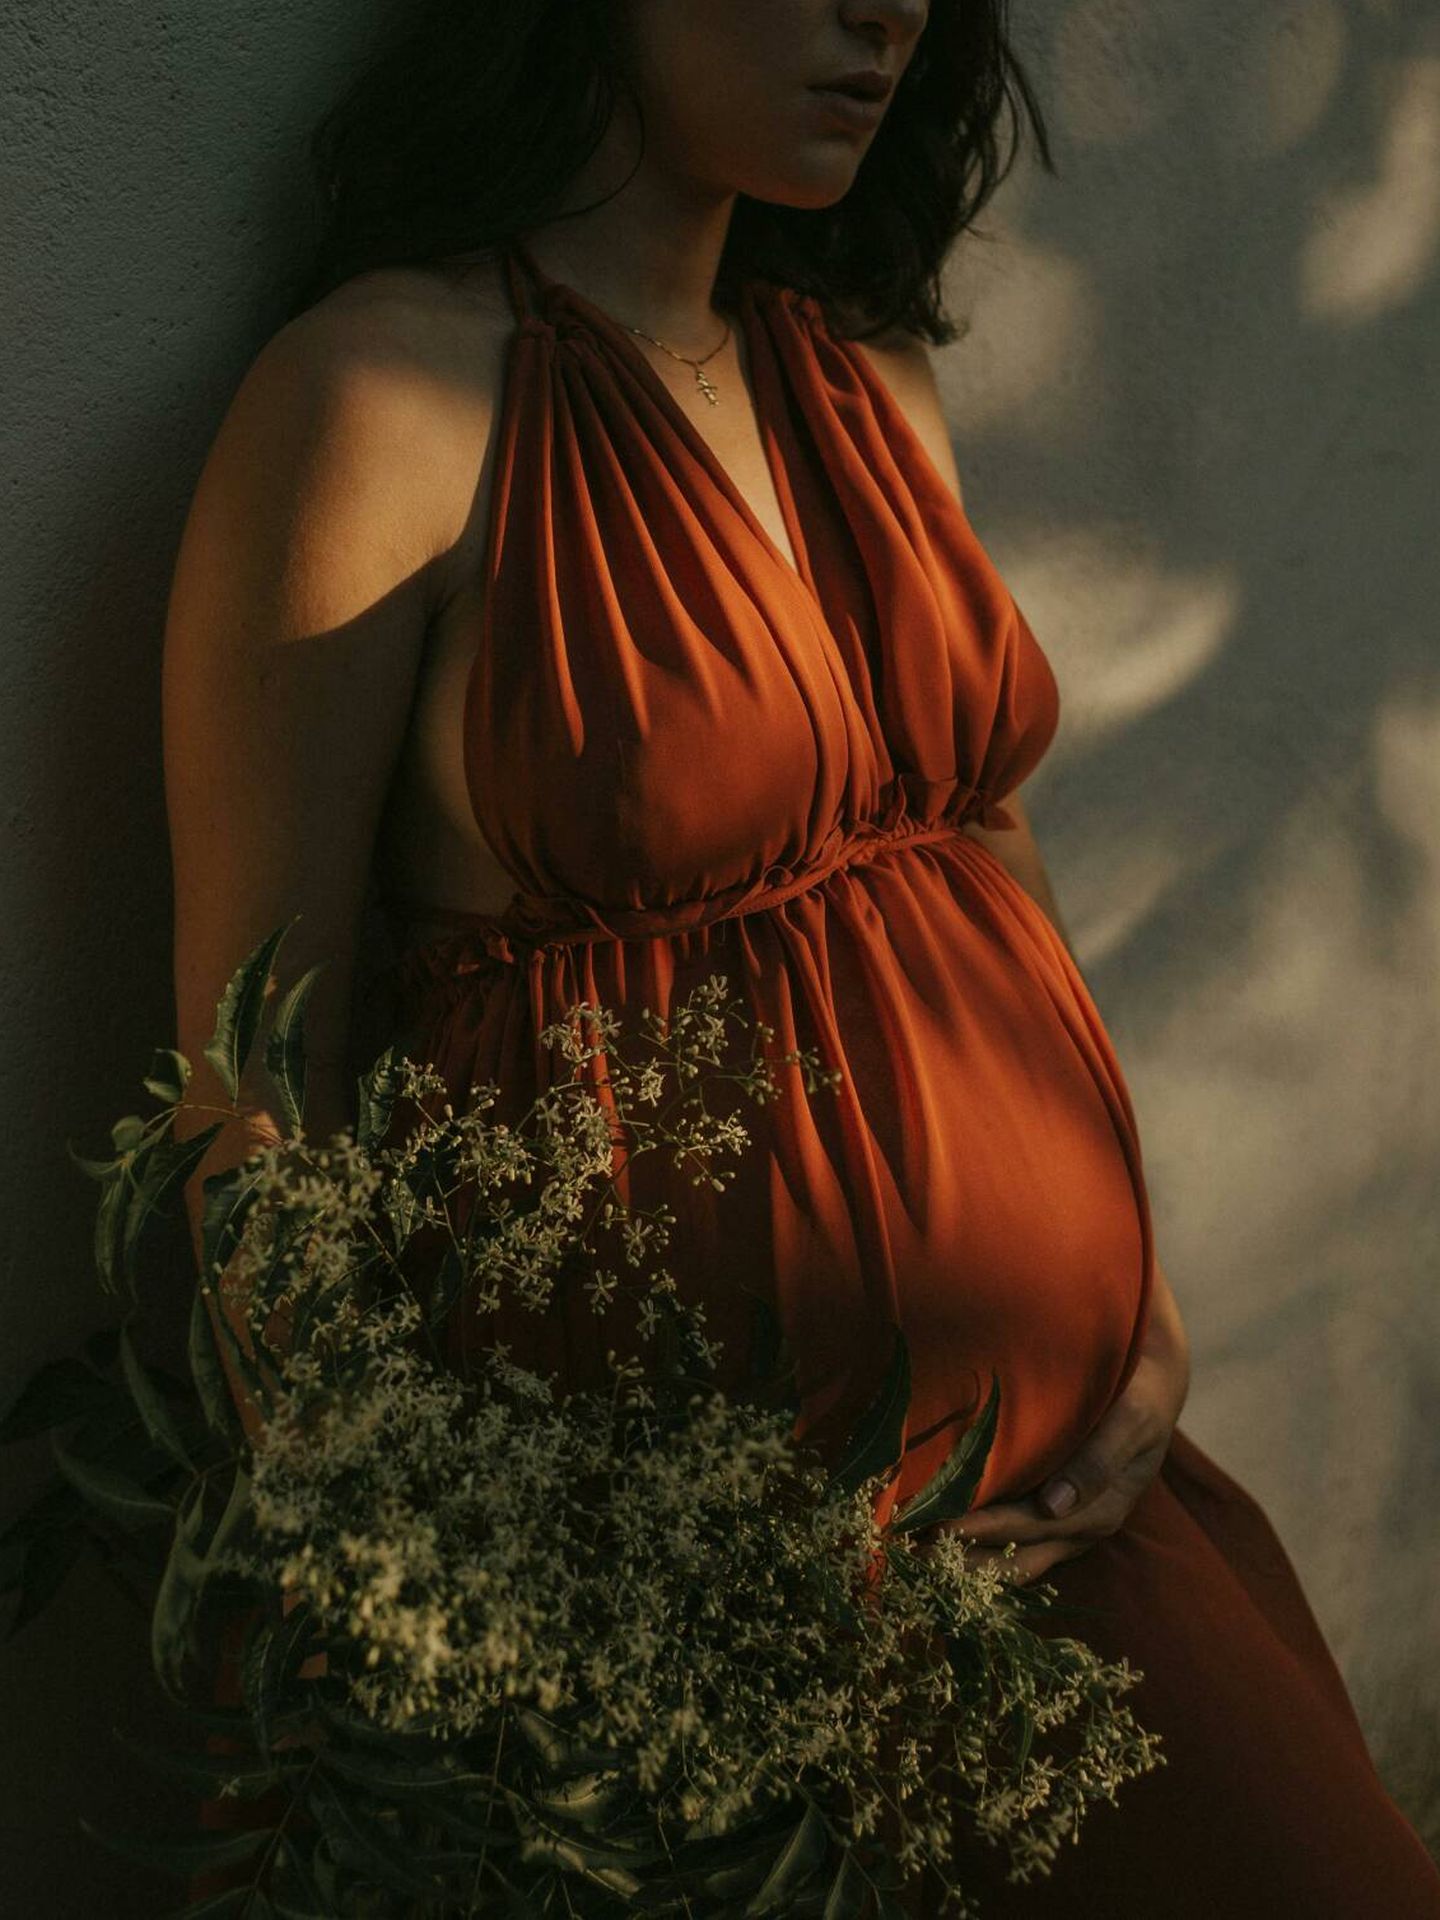 El embarazo no siempre es fácil (Pexels/Lucas Mendes)